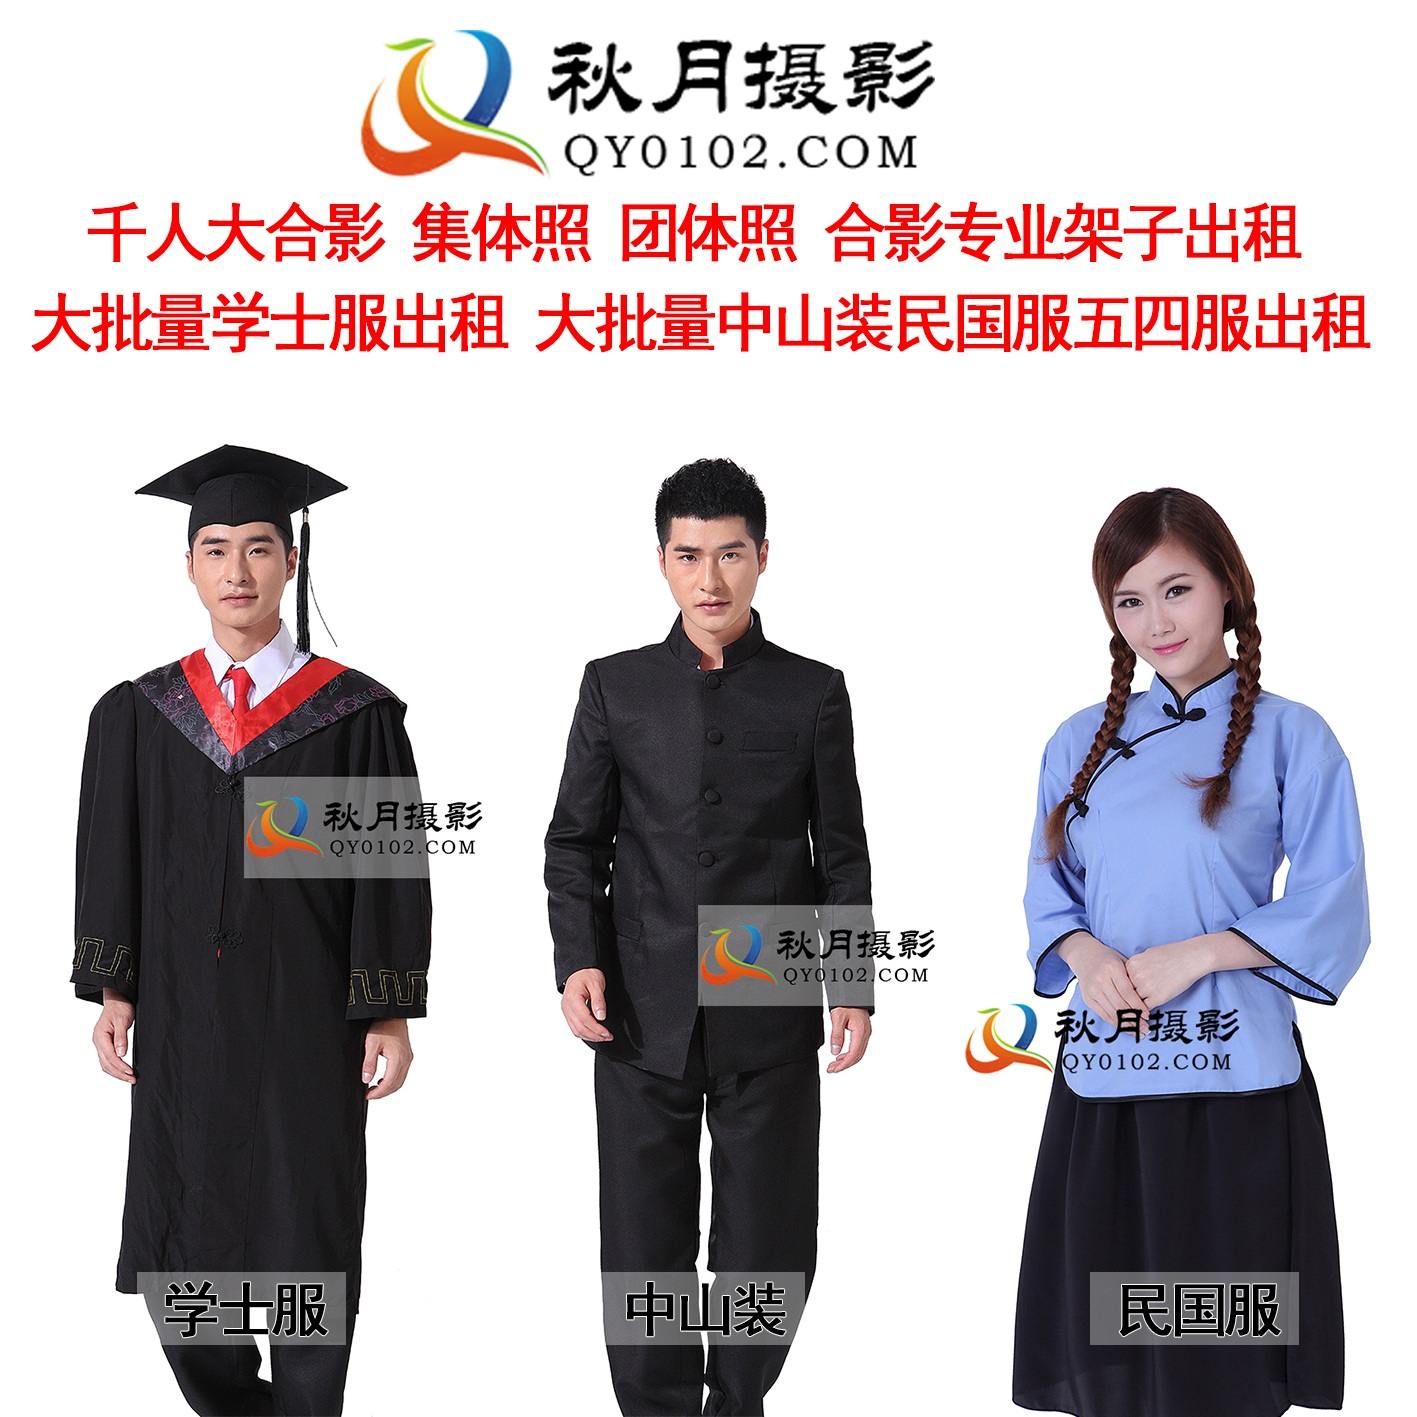 广州哪里有学士服出租数量最多？